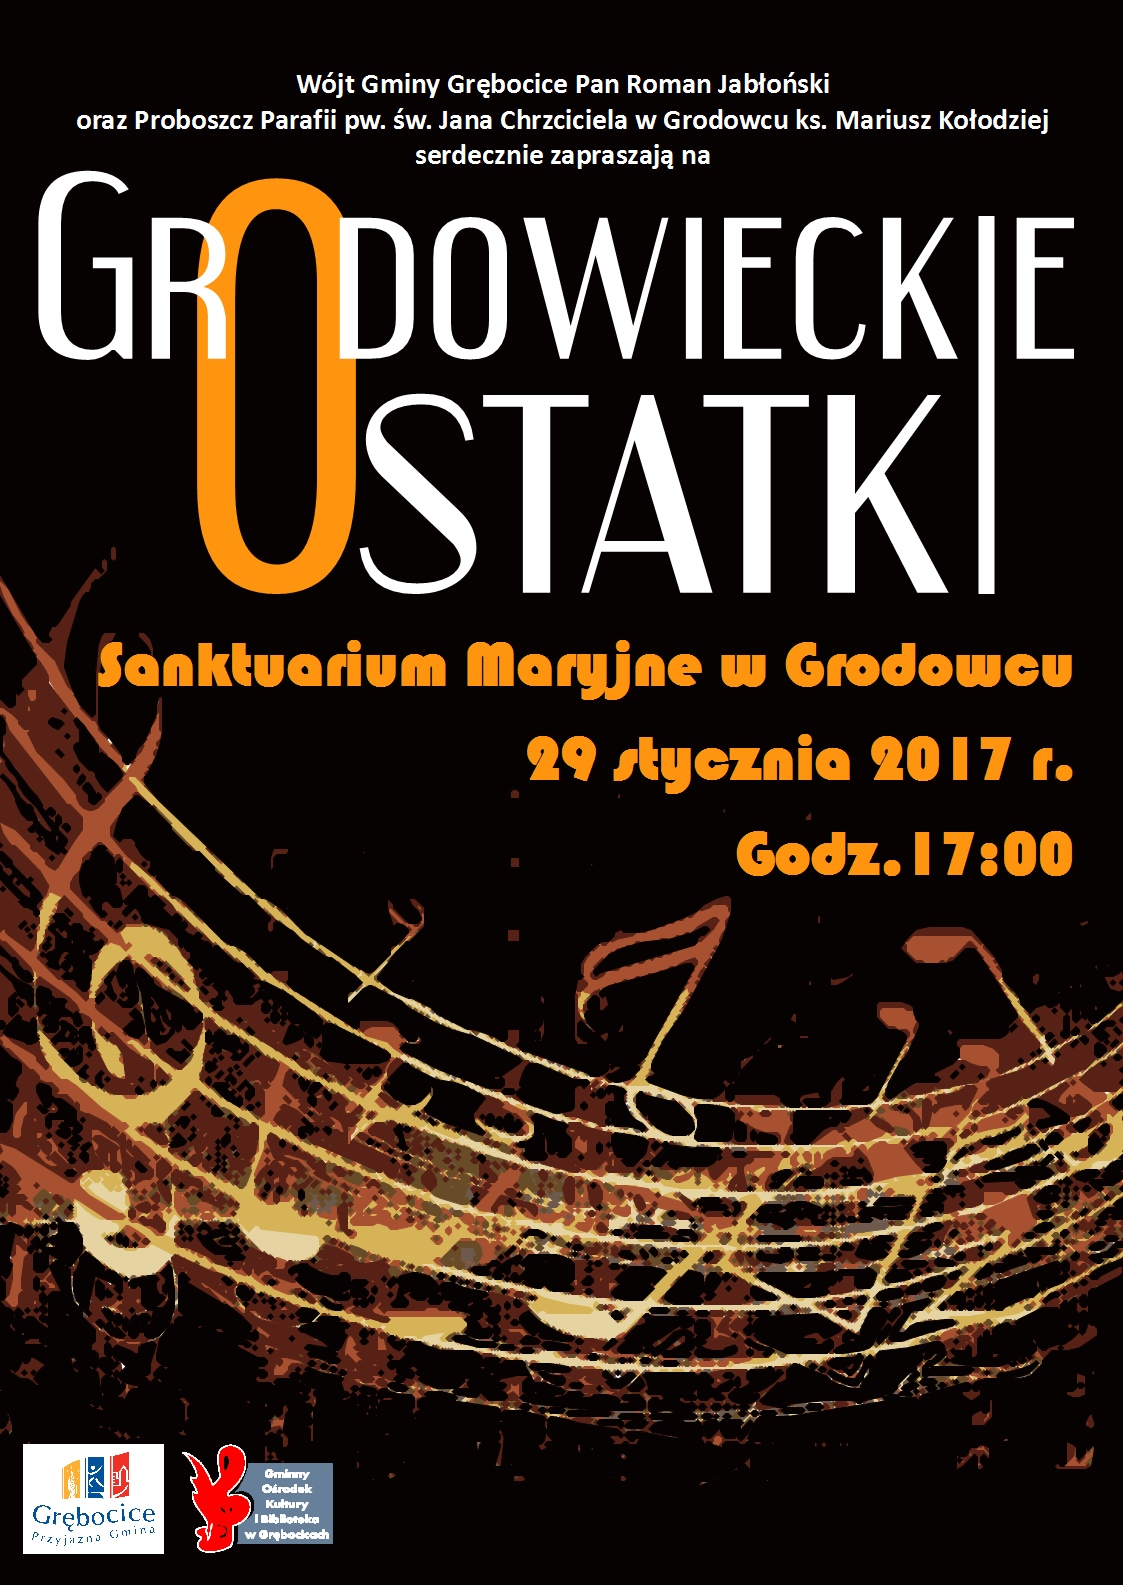 Grodowieckie Ostatki